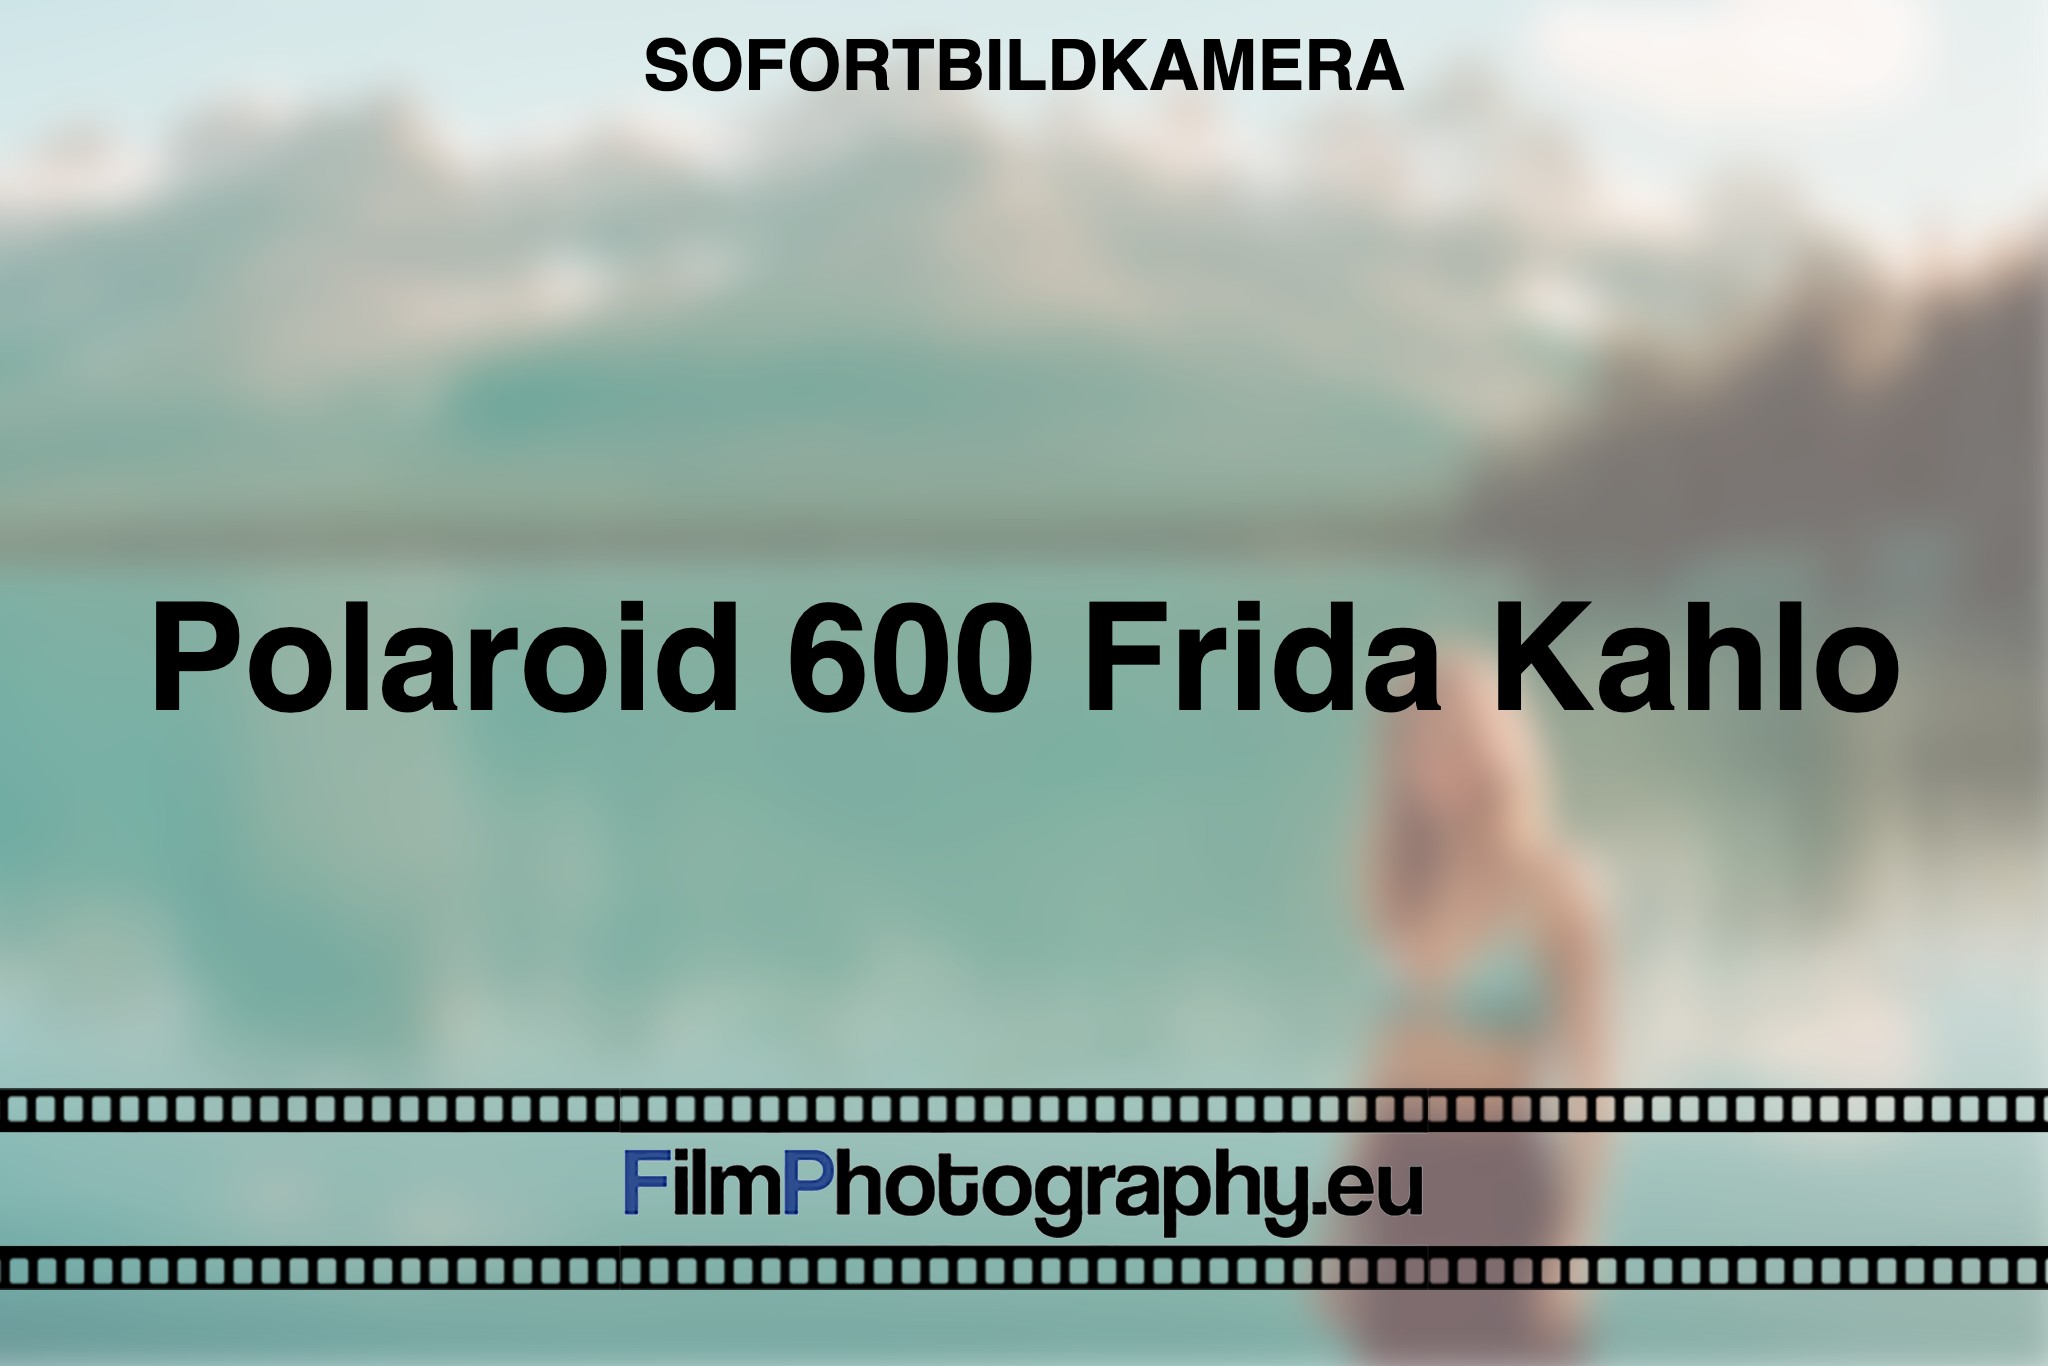 polaroid-600-frida-kahlo-sofortbildkamera-bnv